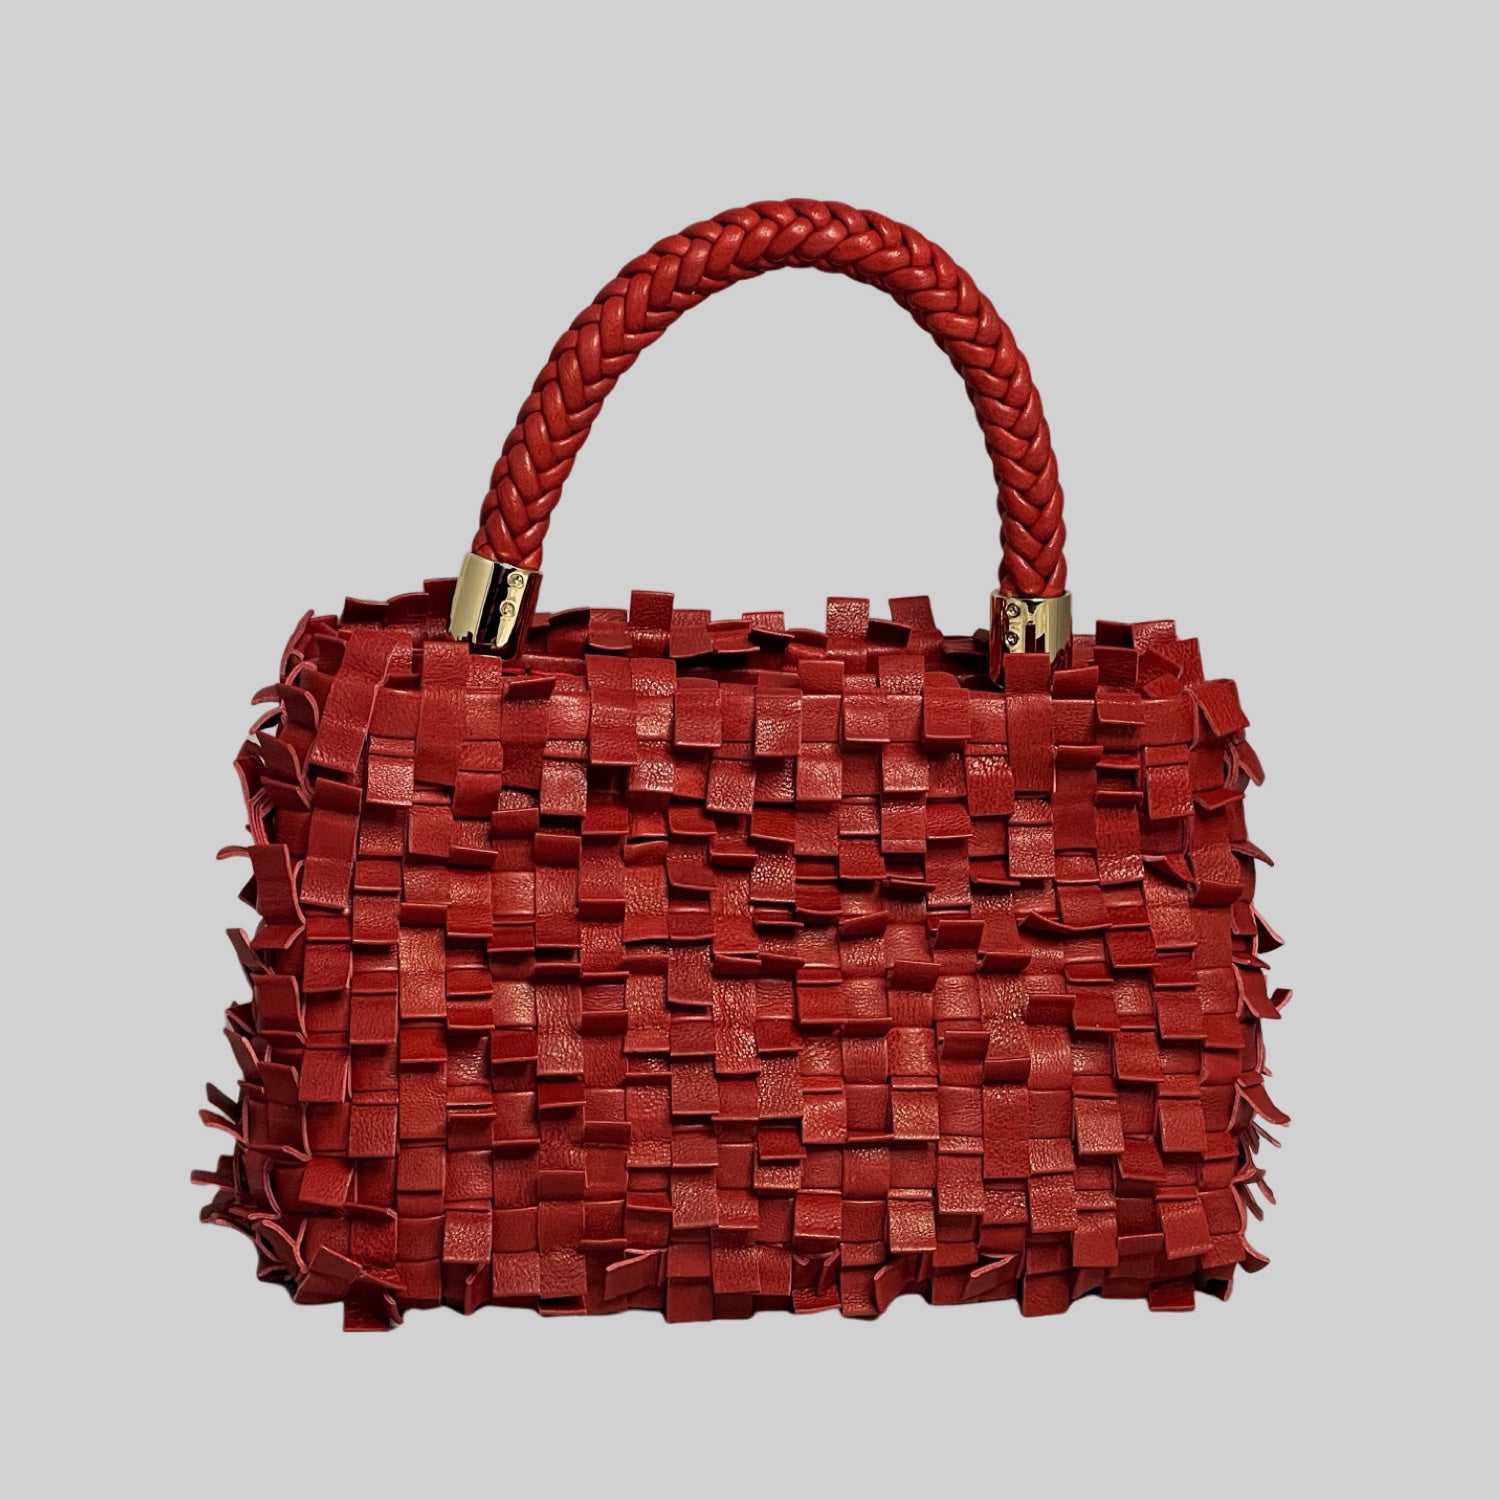 Ribimini-vesken i rødt skinner med sin unike tekstur og flettet design. Solid håndtak og gullfargede detaljer legger til eleganse, og den kompakte størrelsen gir praktisk bruk.